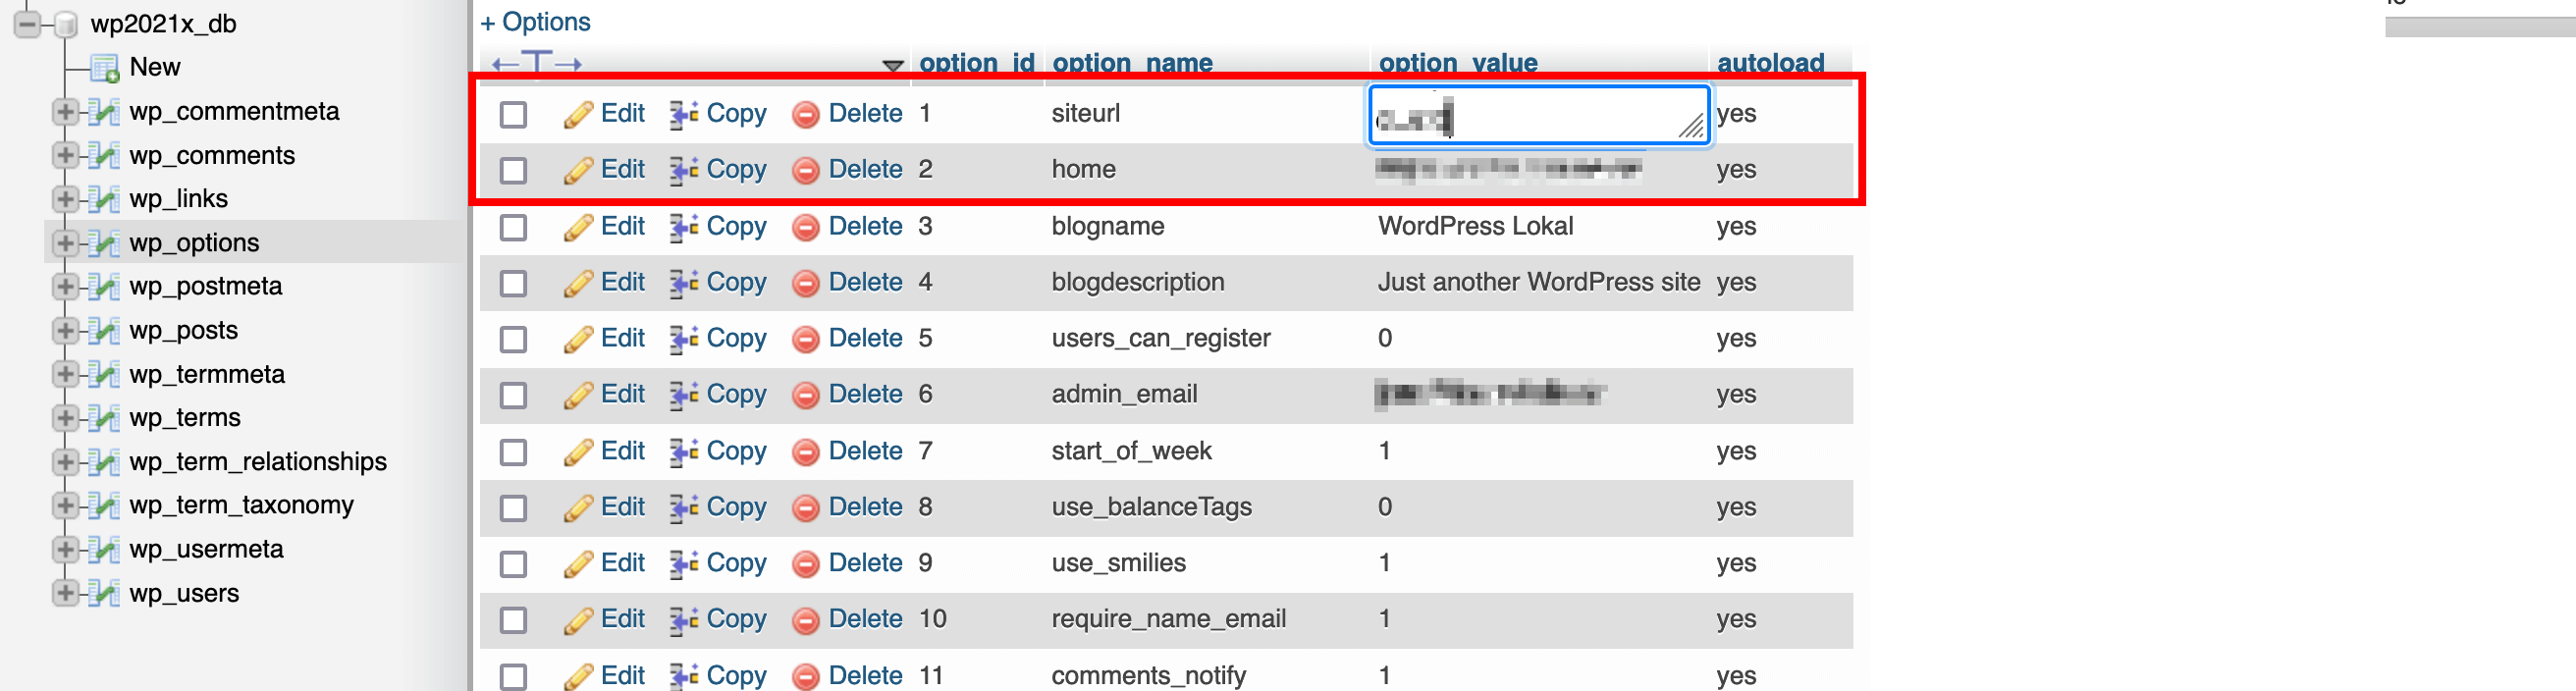 wp_options dans la base de données WordPress